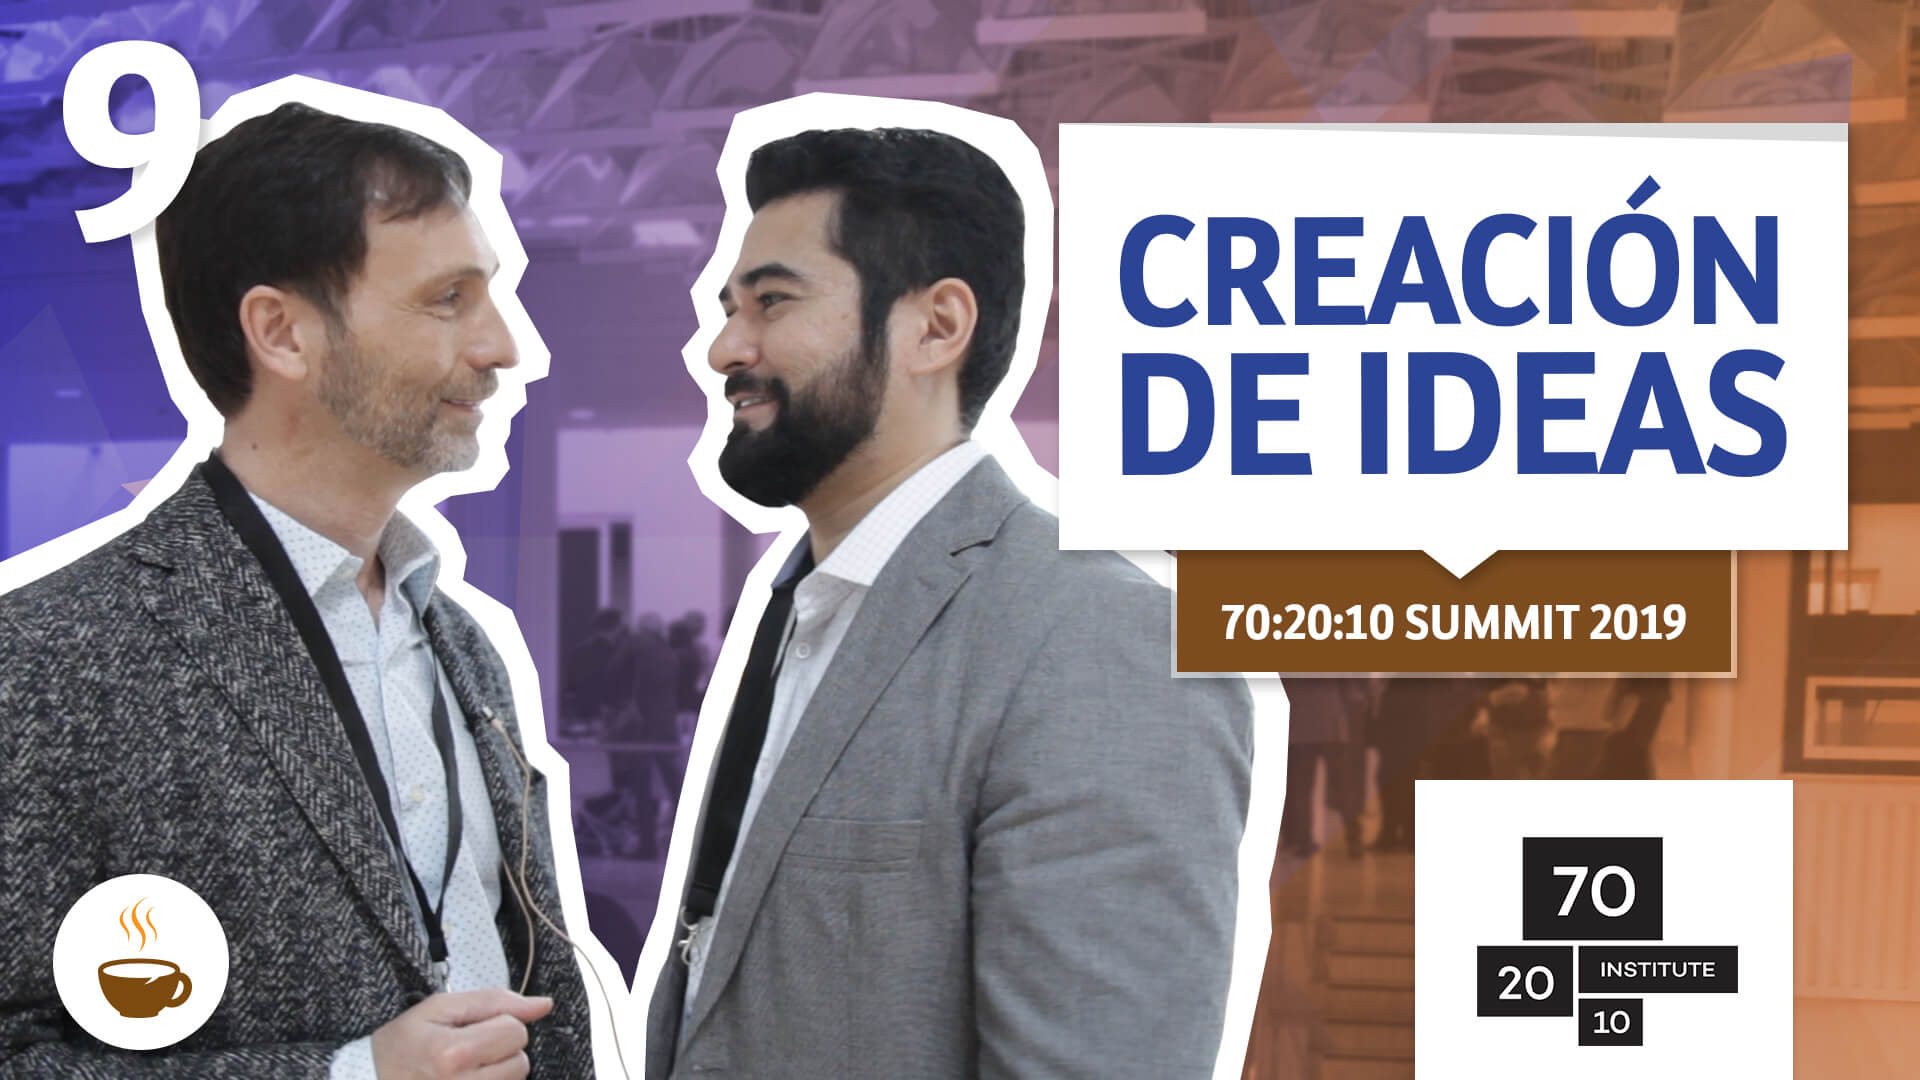 Wagner Cassimiro habla con Miquél Casas de BHC sobre Creación de ideas en el 70:20:10 Summit, 2019